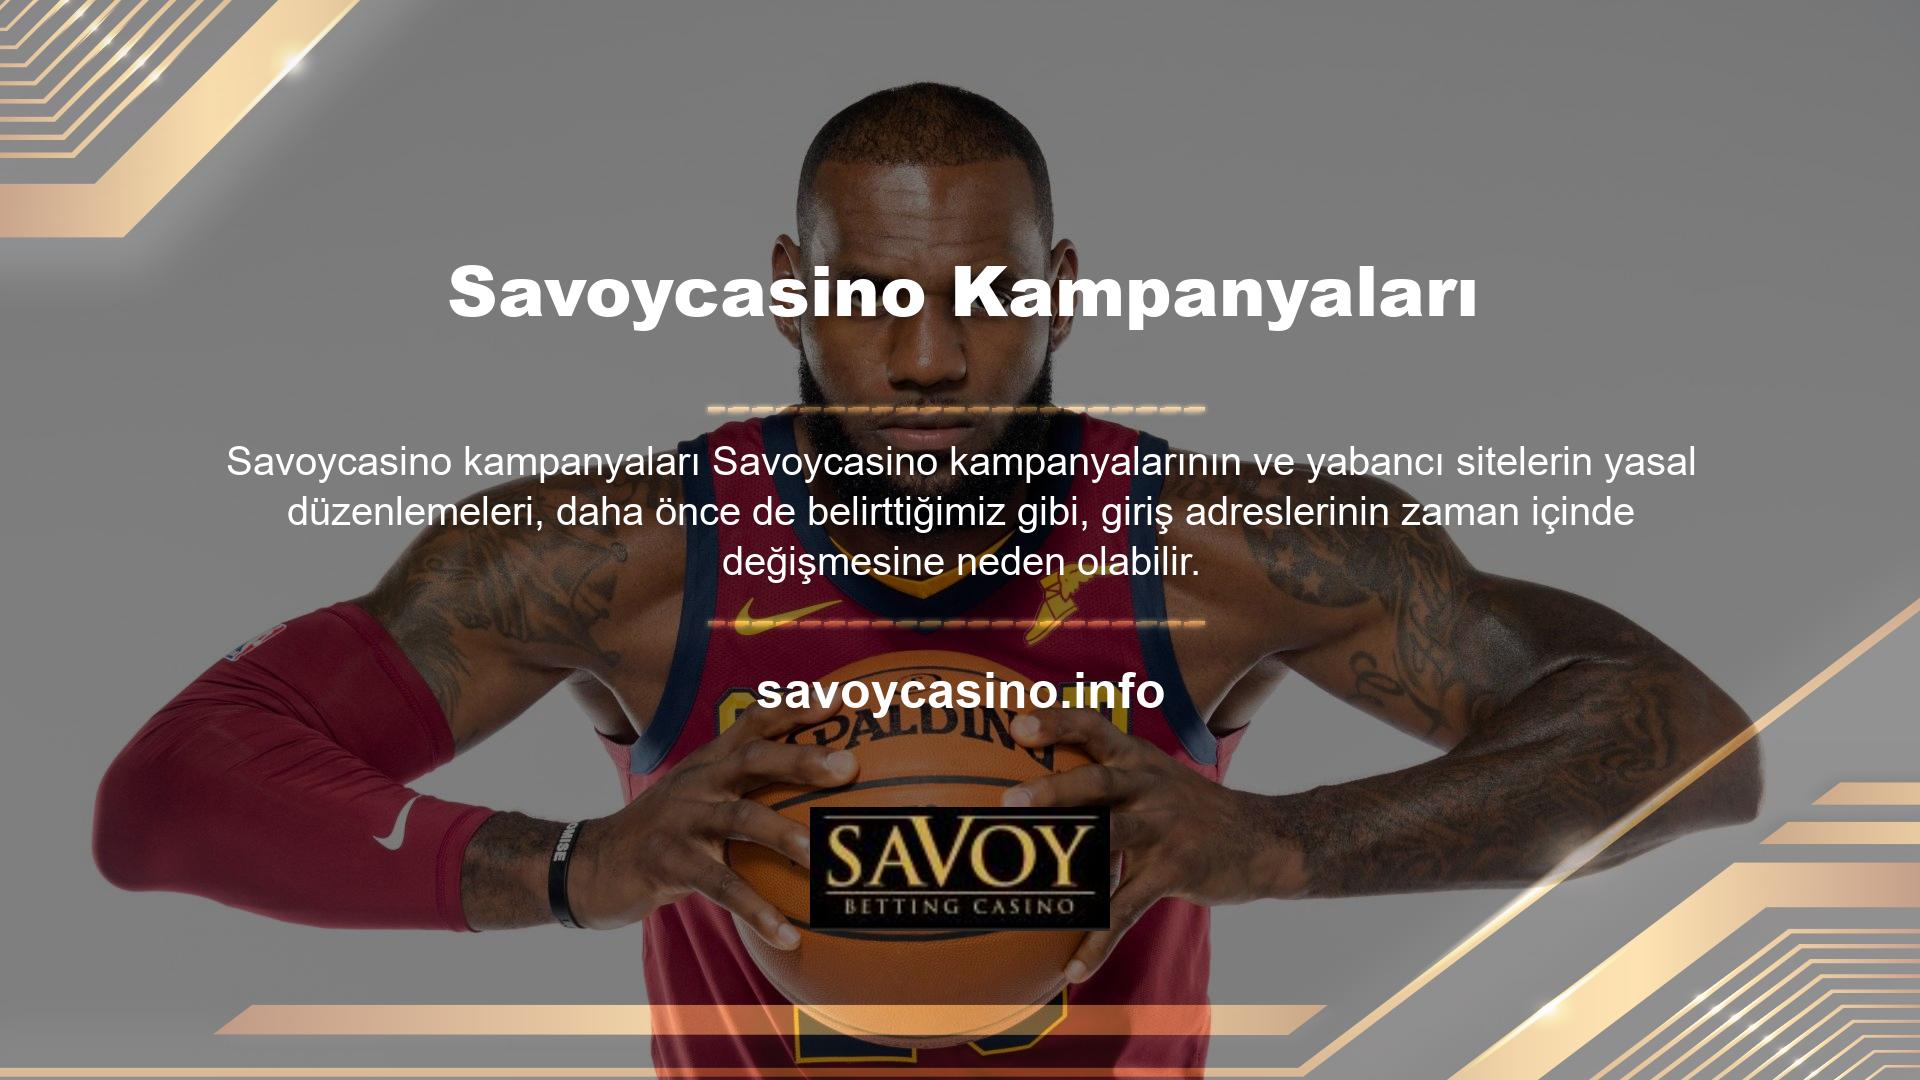 En son değişiklik için Savoycasino giriş adresi verildi